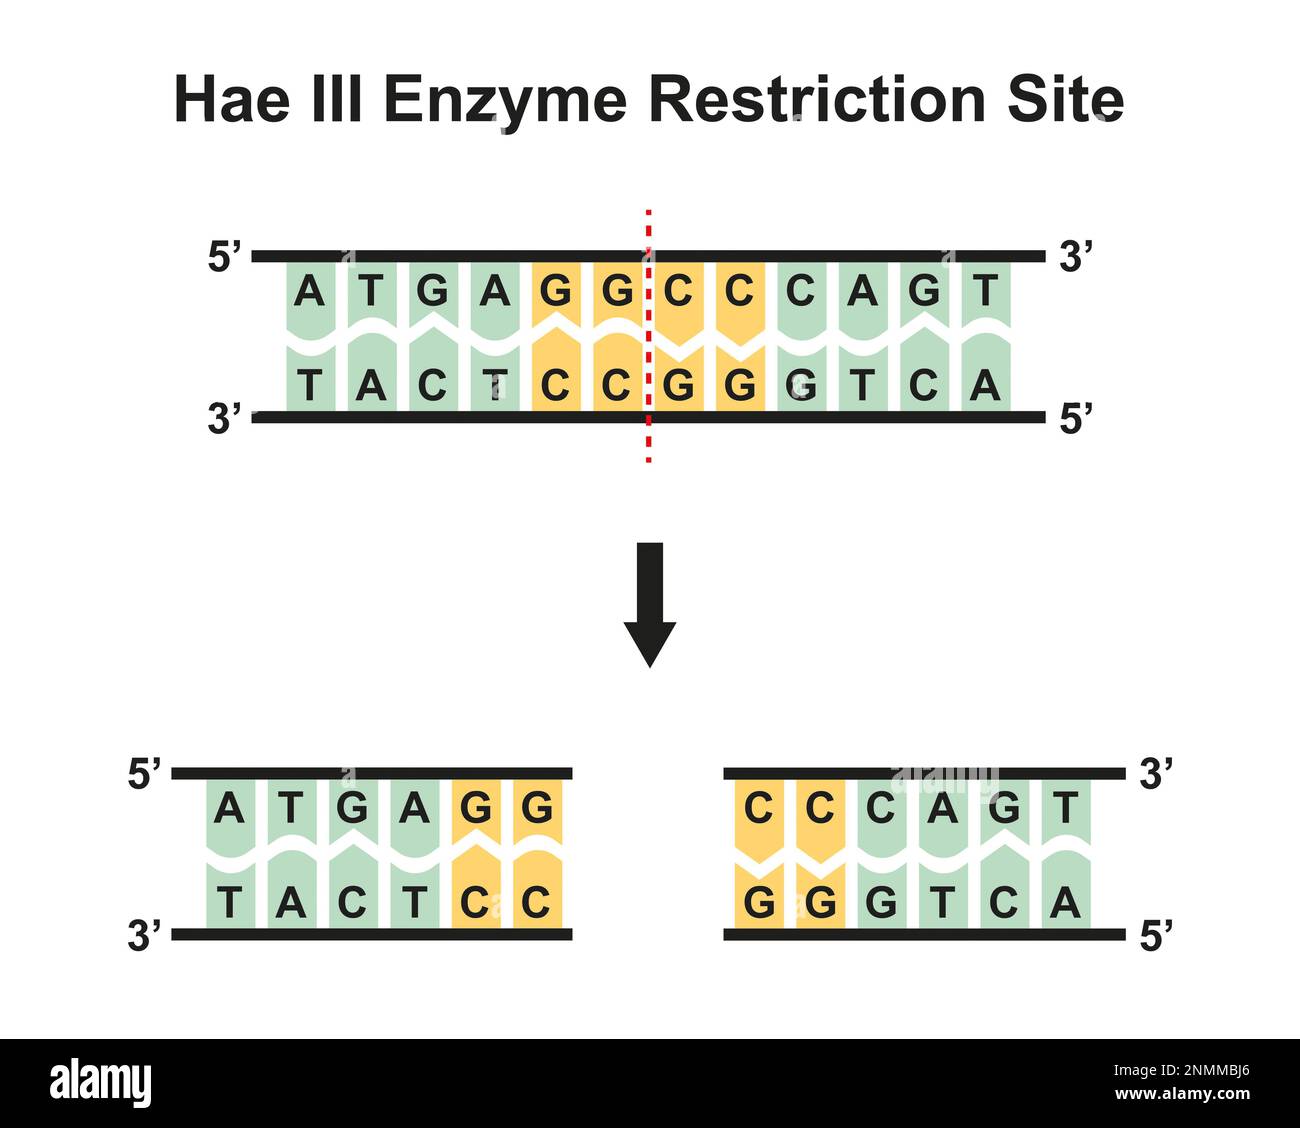 Site de restriction enzymatique HaeIII, illustration Banque D'Images